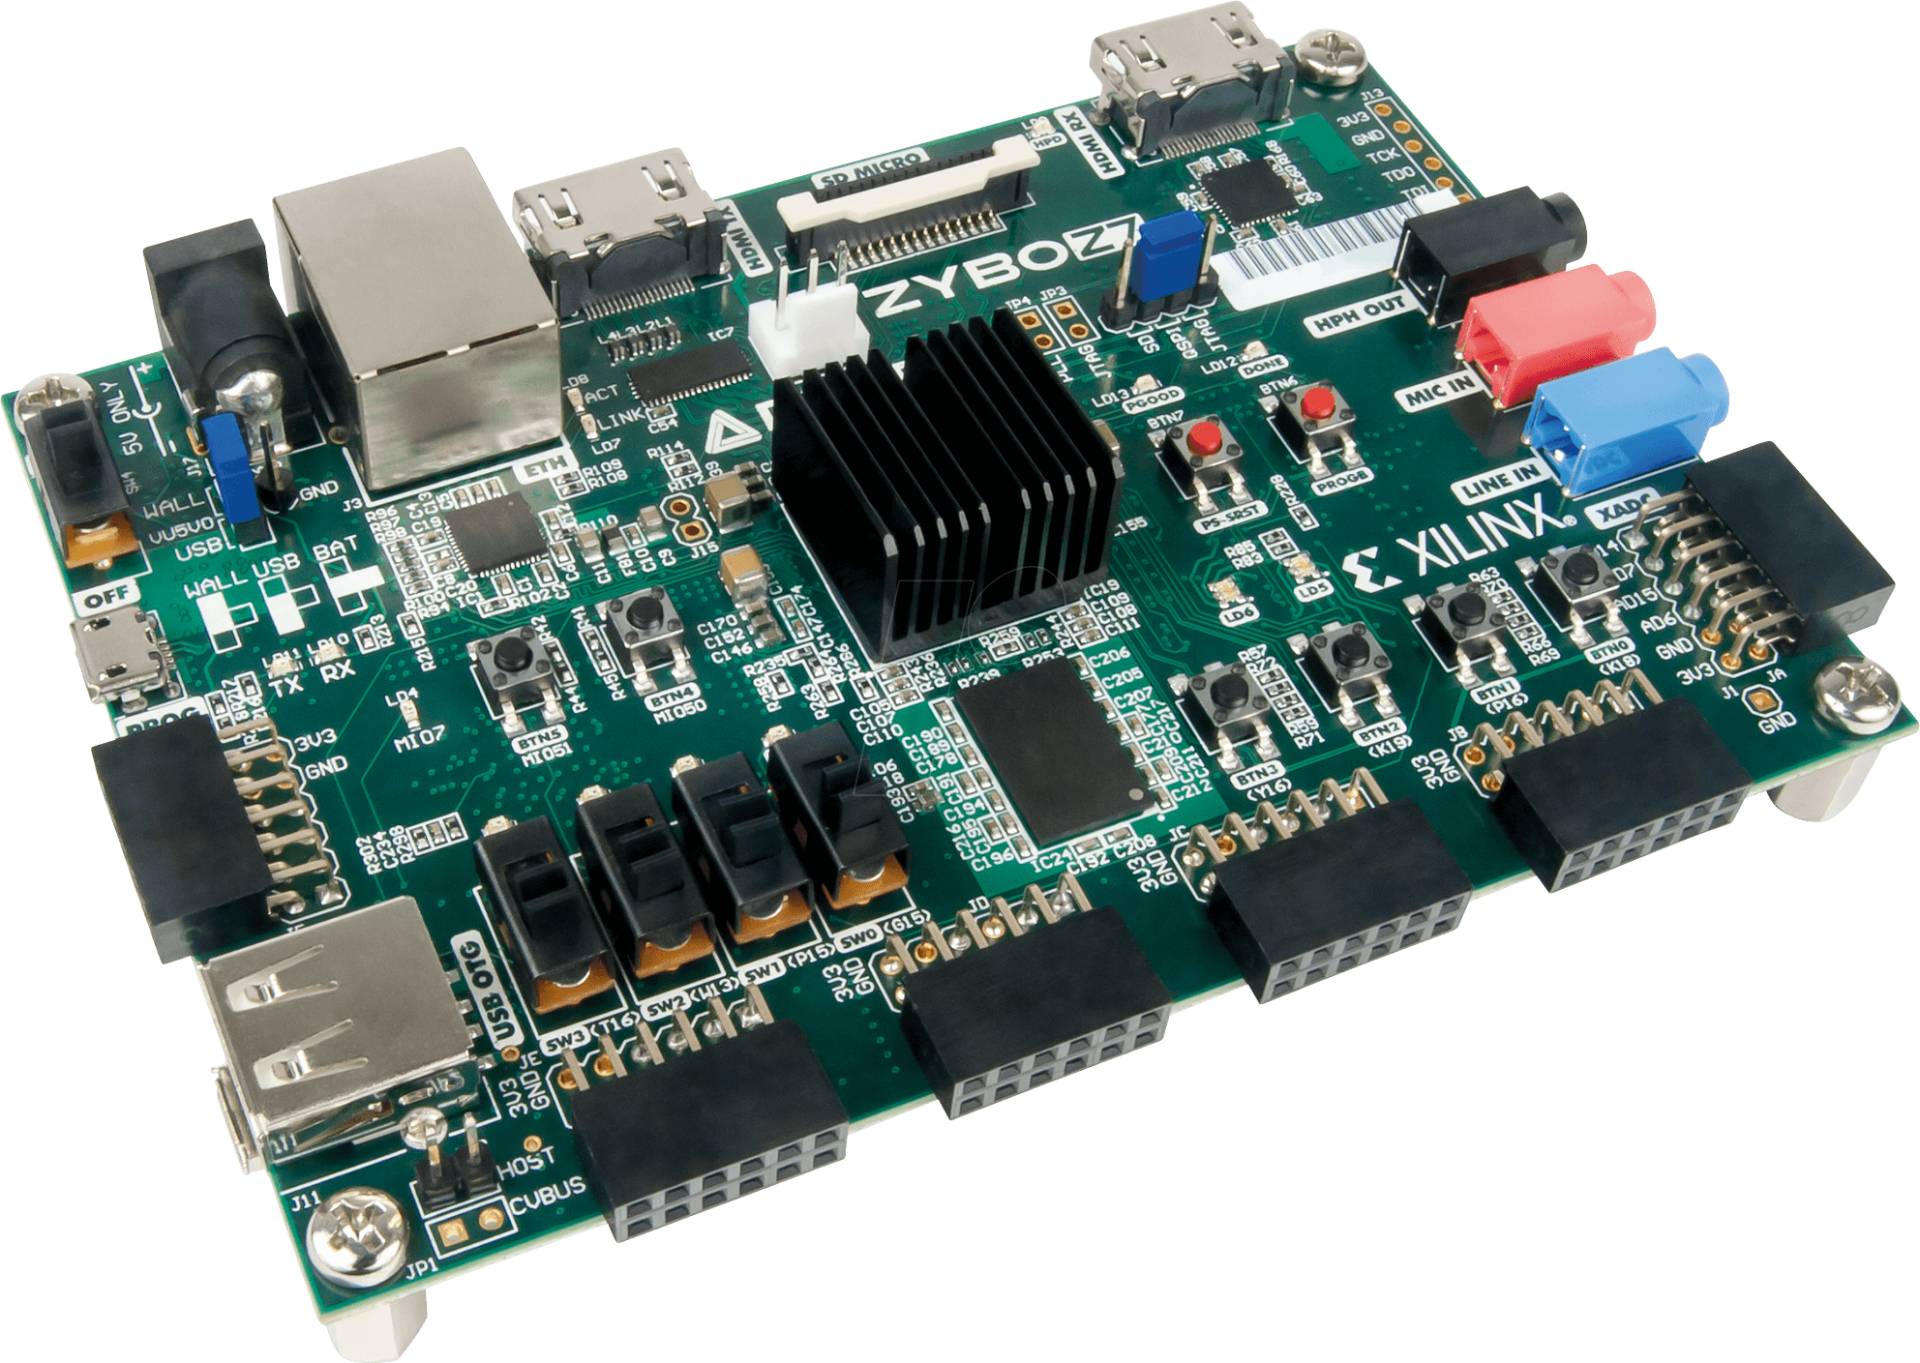 DIGIL 471-015 - Entwicklungsboard Zybo Z7-20: Zynq-7000 ARM/FPGA SoC von DIGILENT